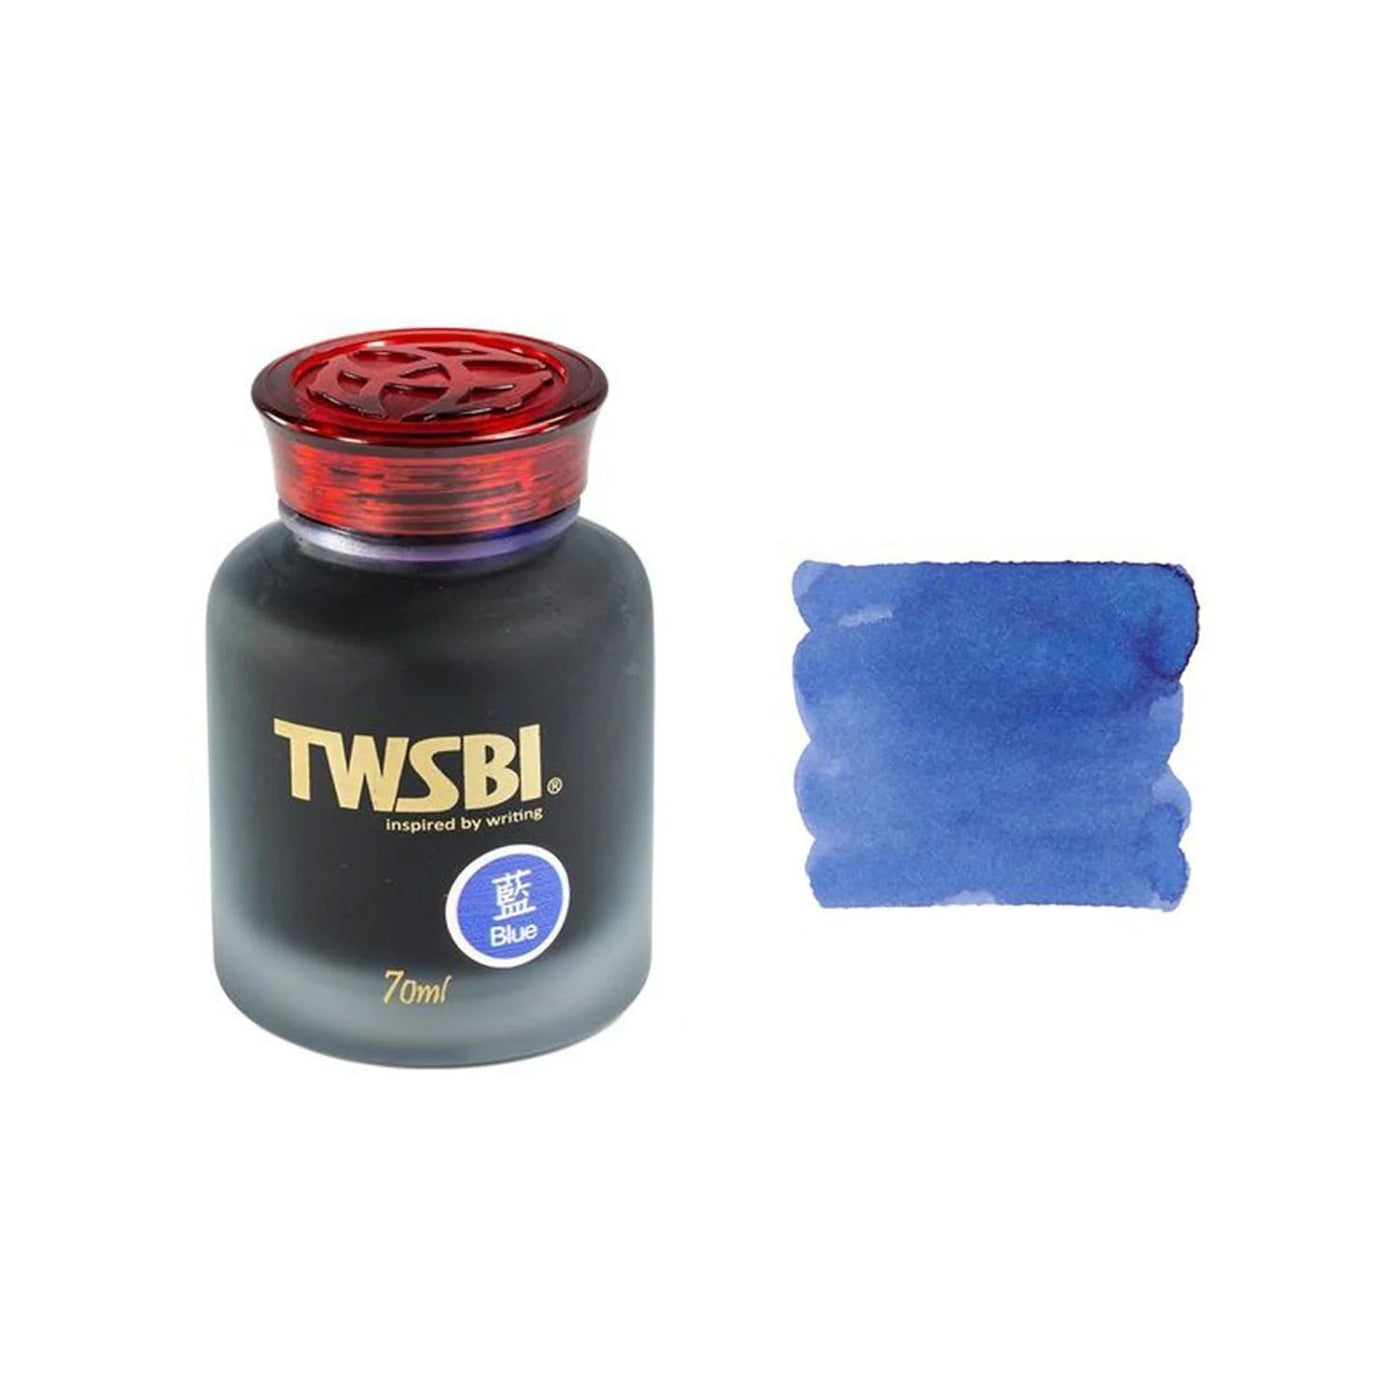 TWSBI Ink Bottle, Sapphire Blue - 70ml